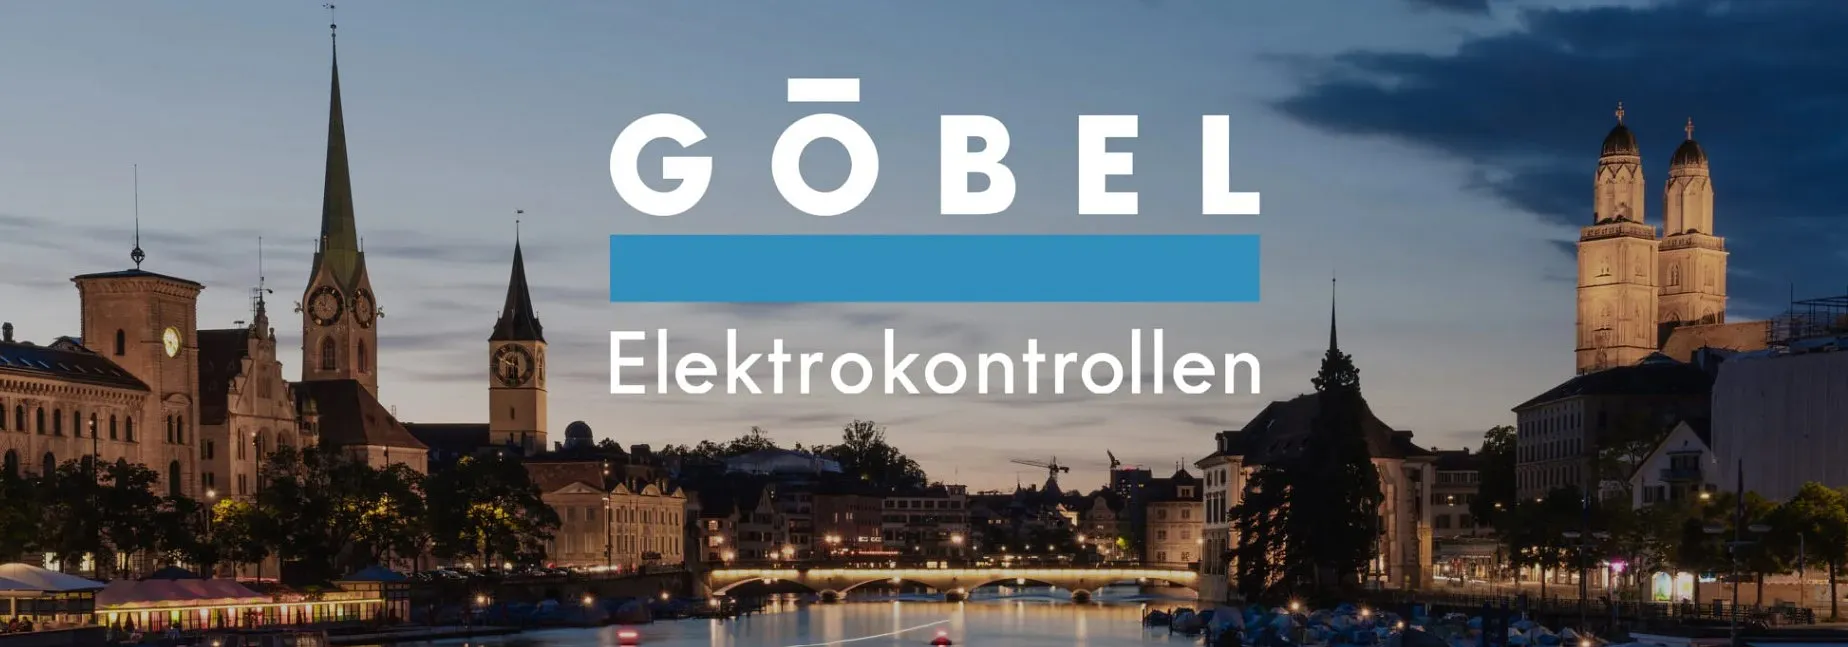 Göbel Elektrokontrollen GmbH